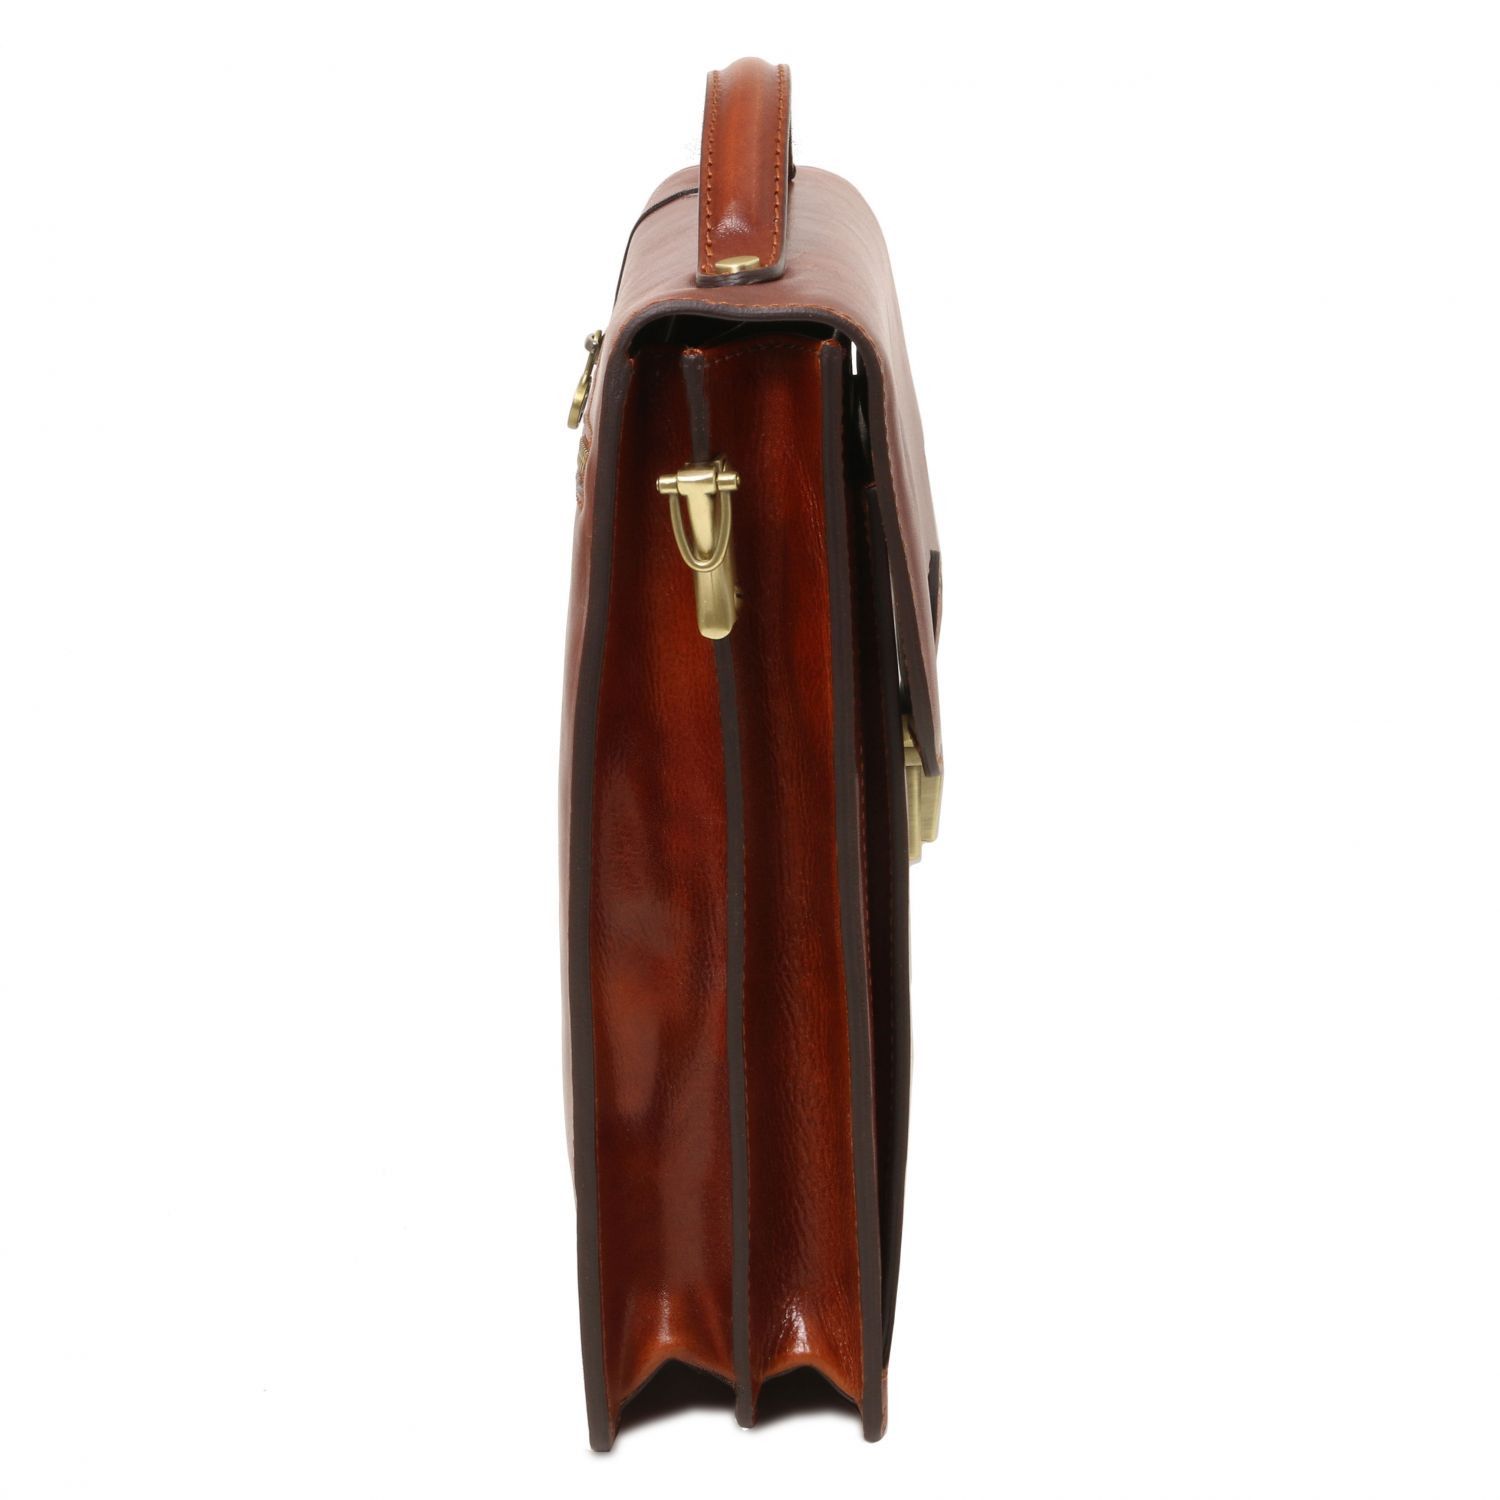 David - Sac bandoulière en cuir pour homme - Grand modèle - Miel (TL141424)